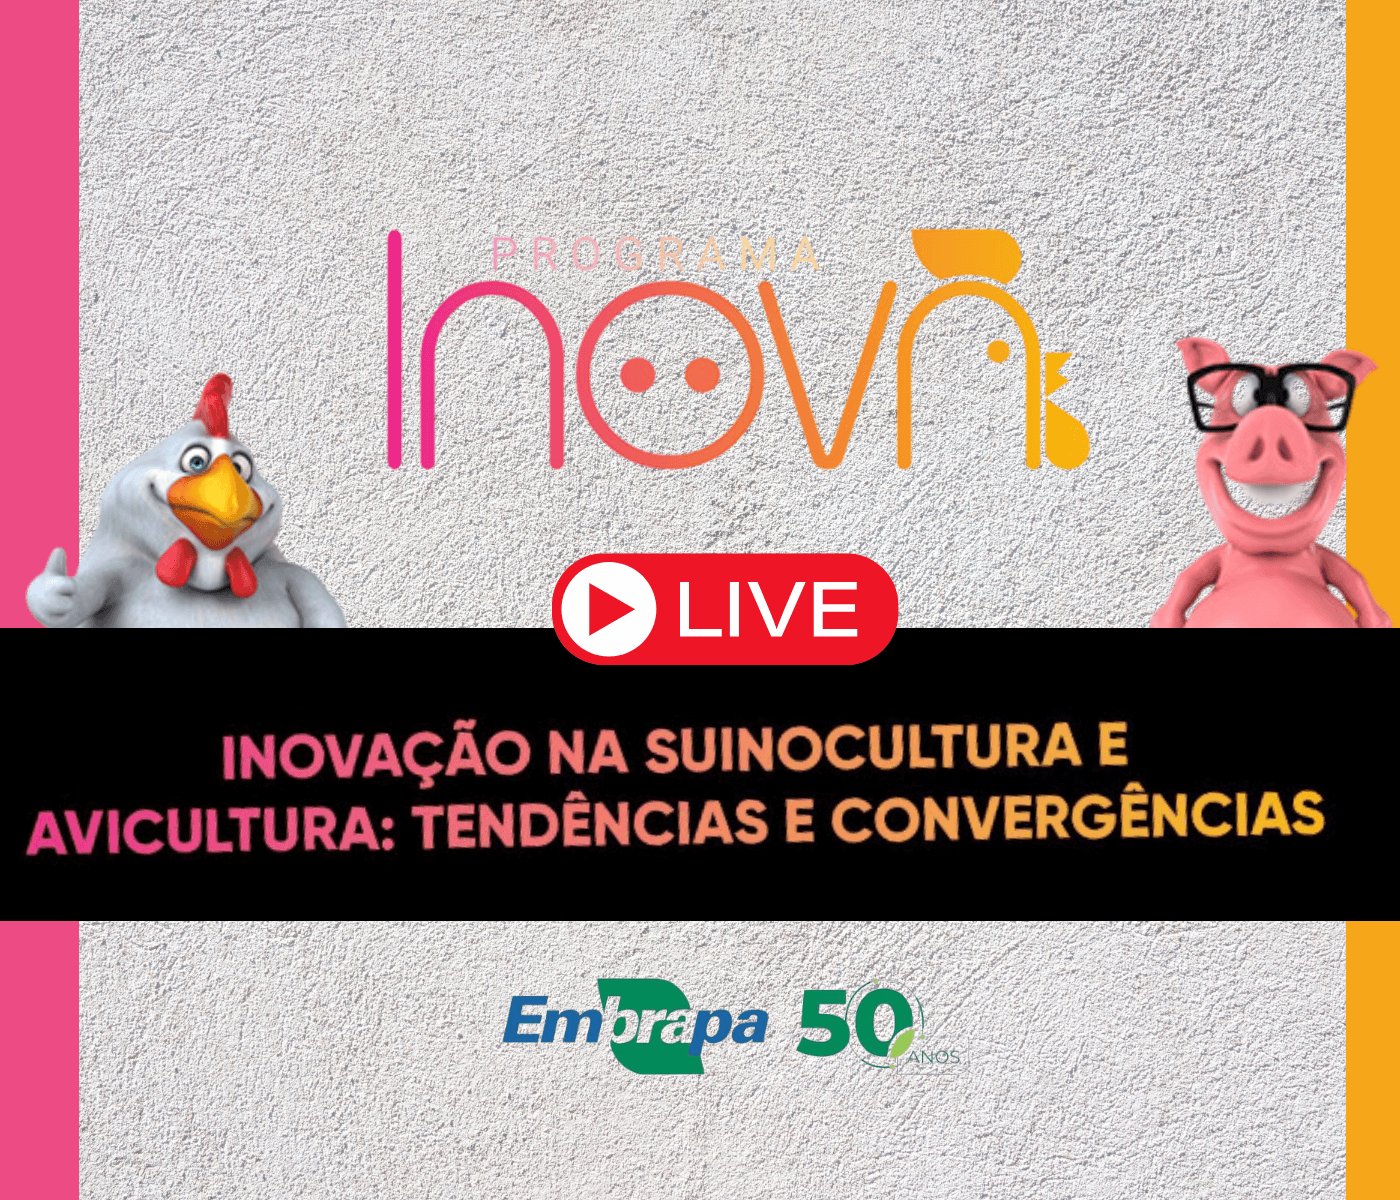 Tendências e convergências na inovação da suinocultura e avicultura serão discutidas em Live do Programa Inova